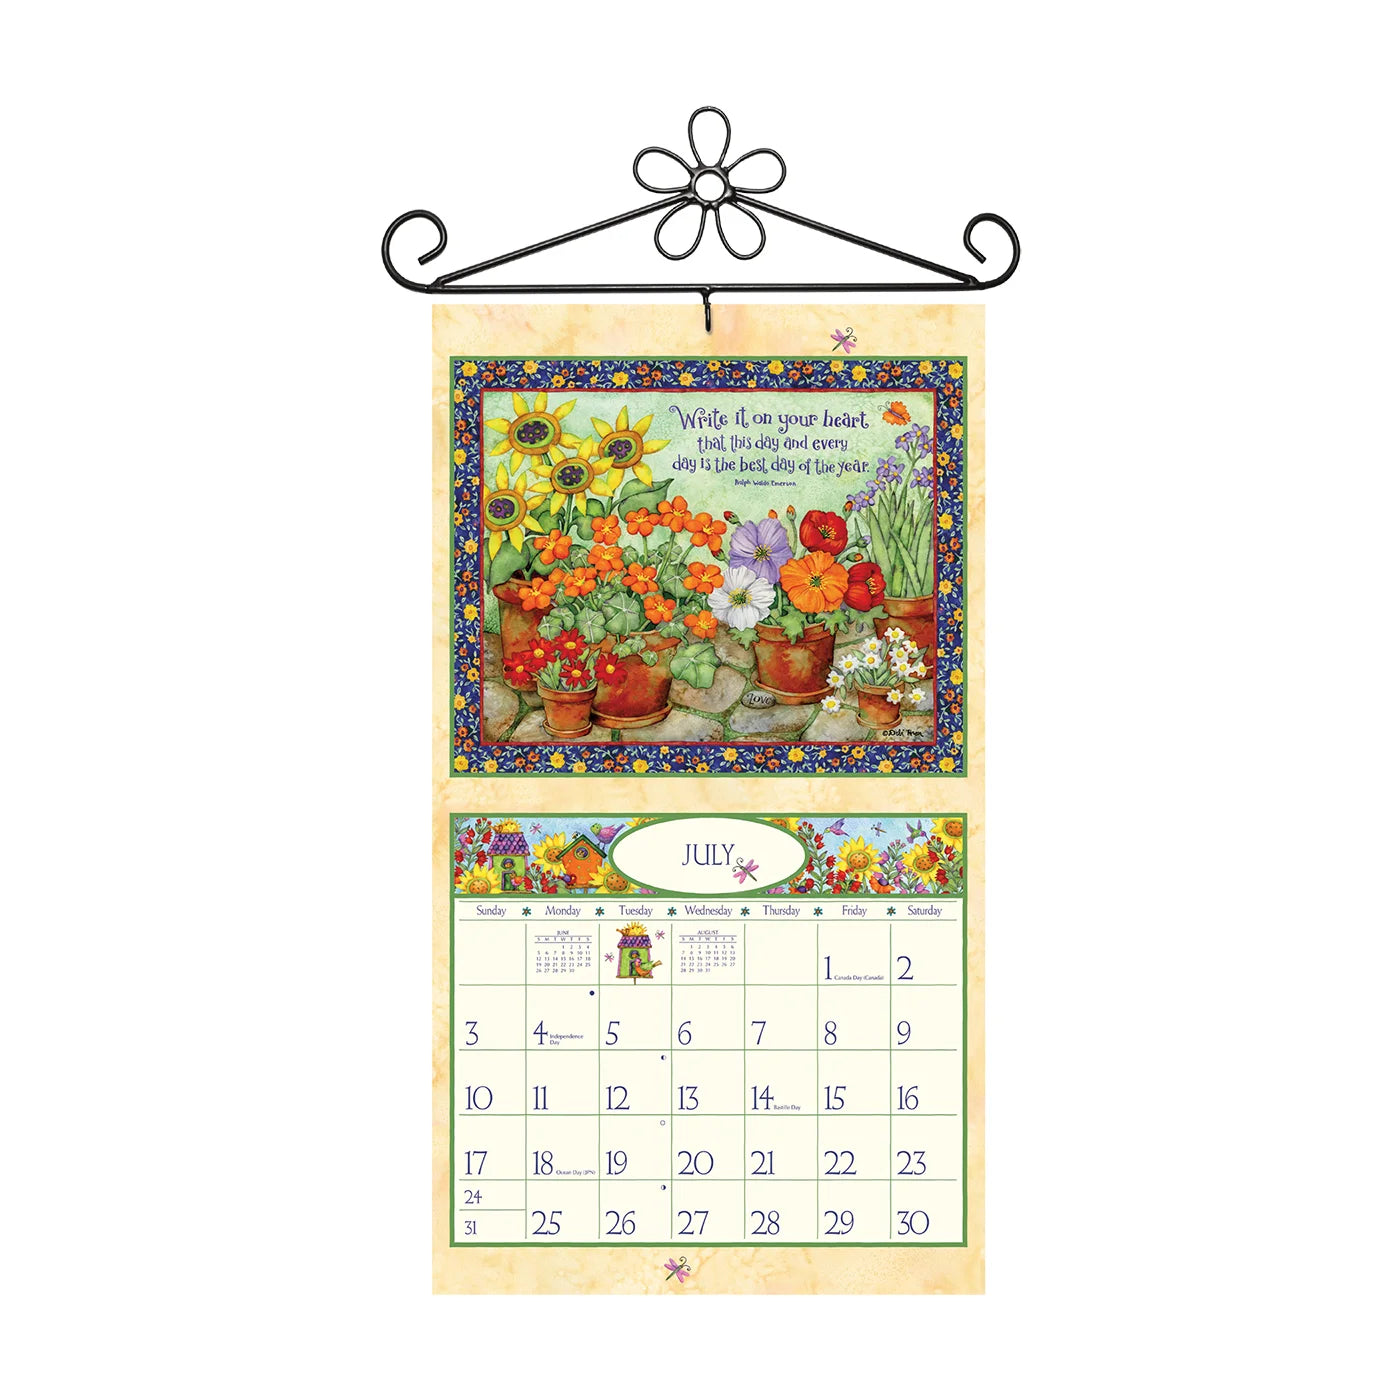 LANG Flower Calendar Wall Hanger (Fits All Wall Calendars) - Calendar Accessories